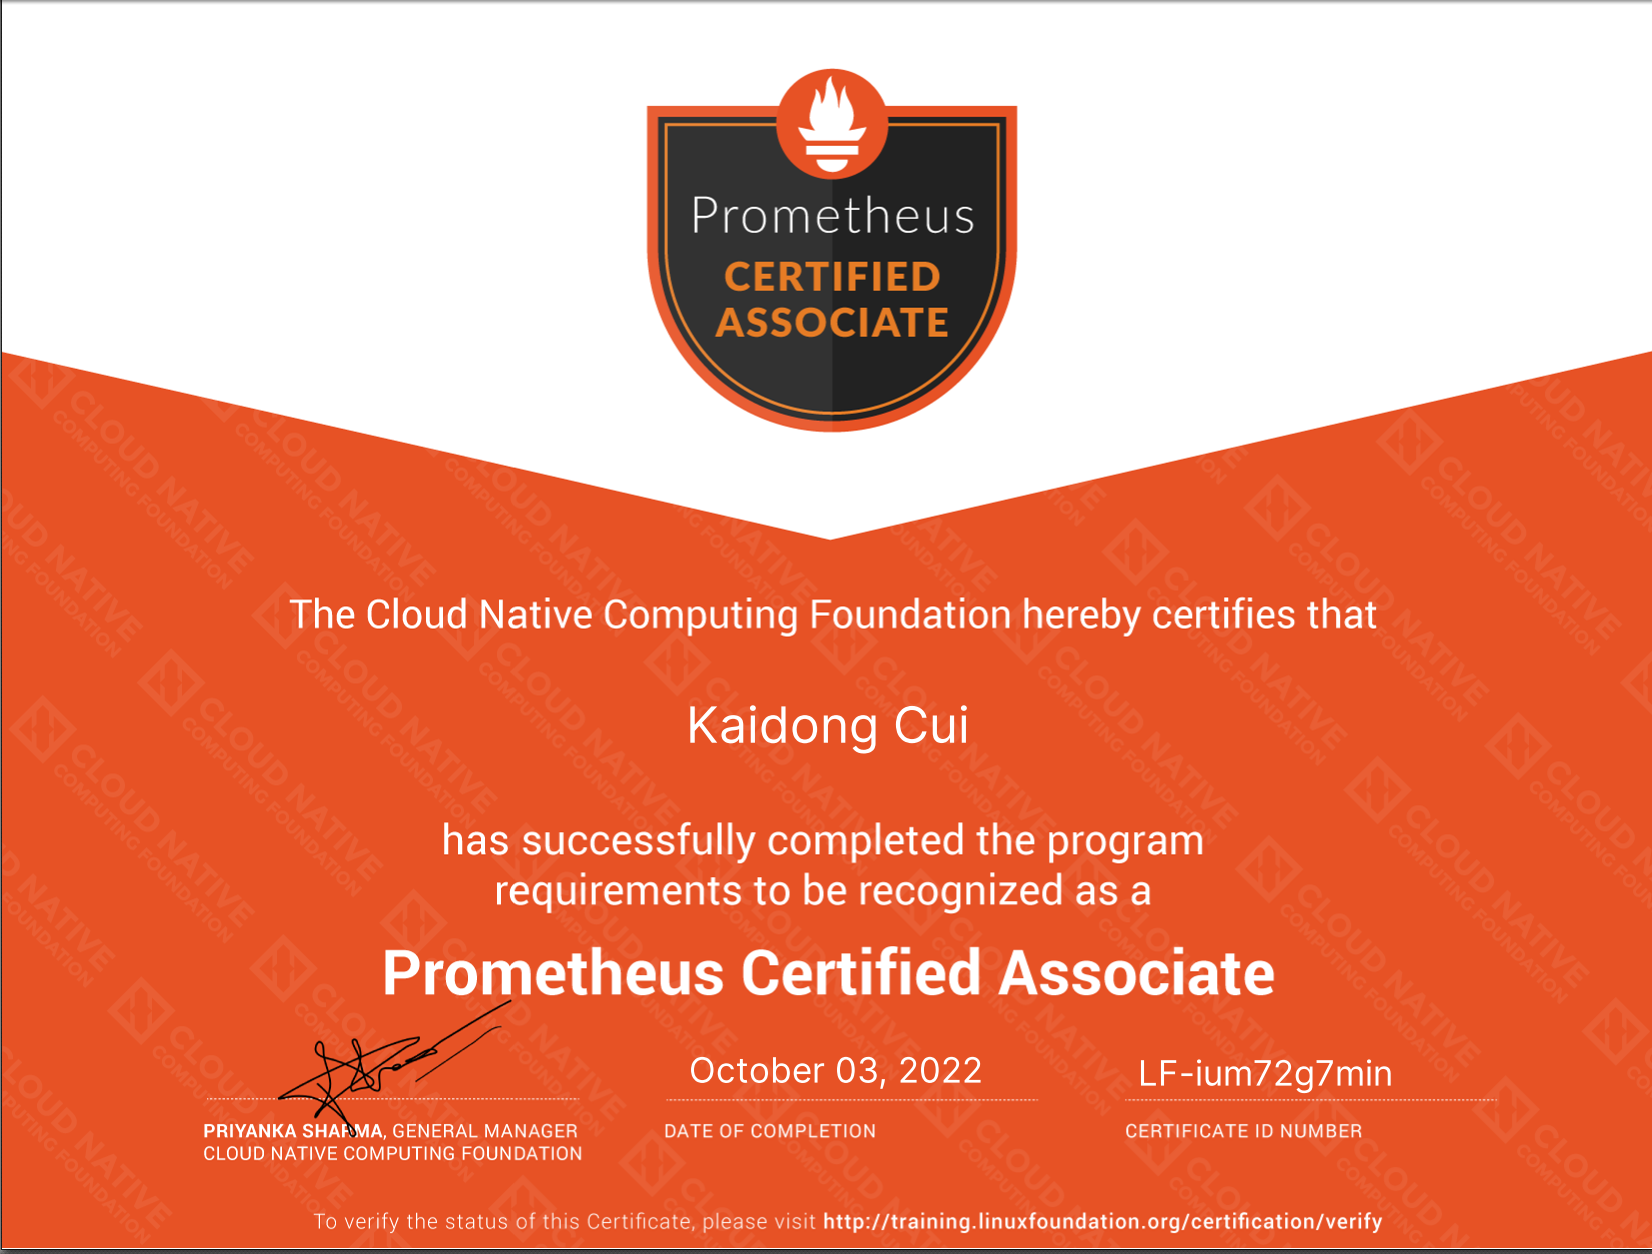 PCA - Prometheus Certified Associate